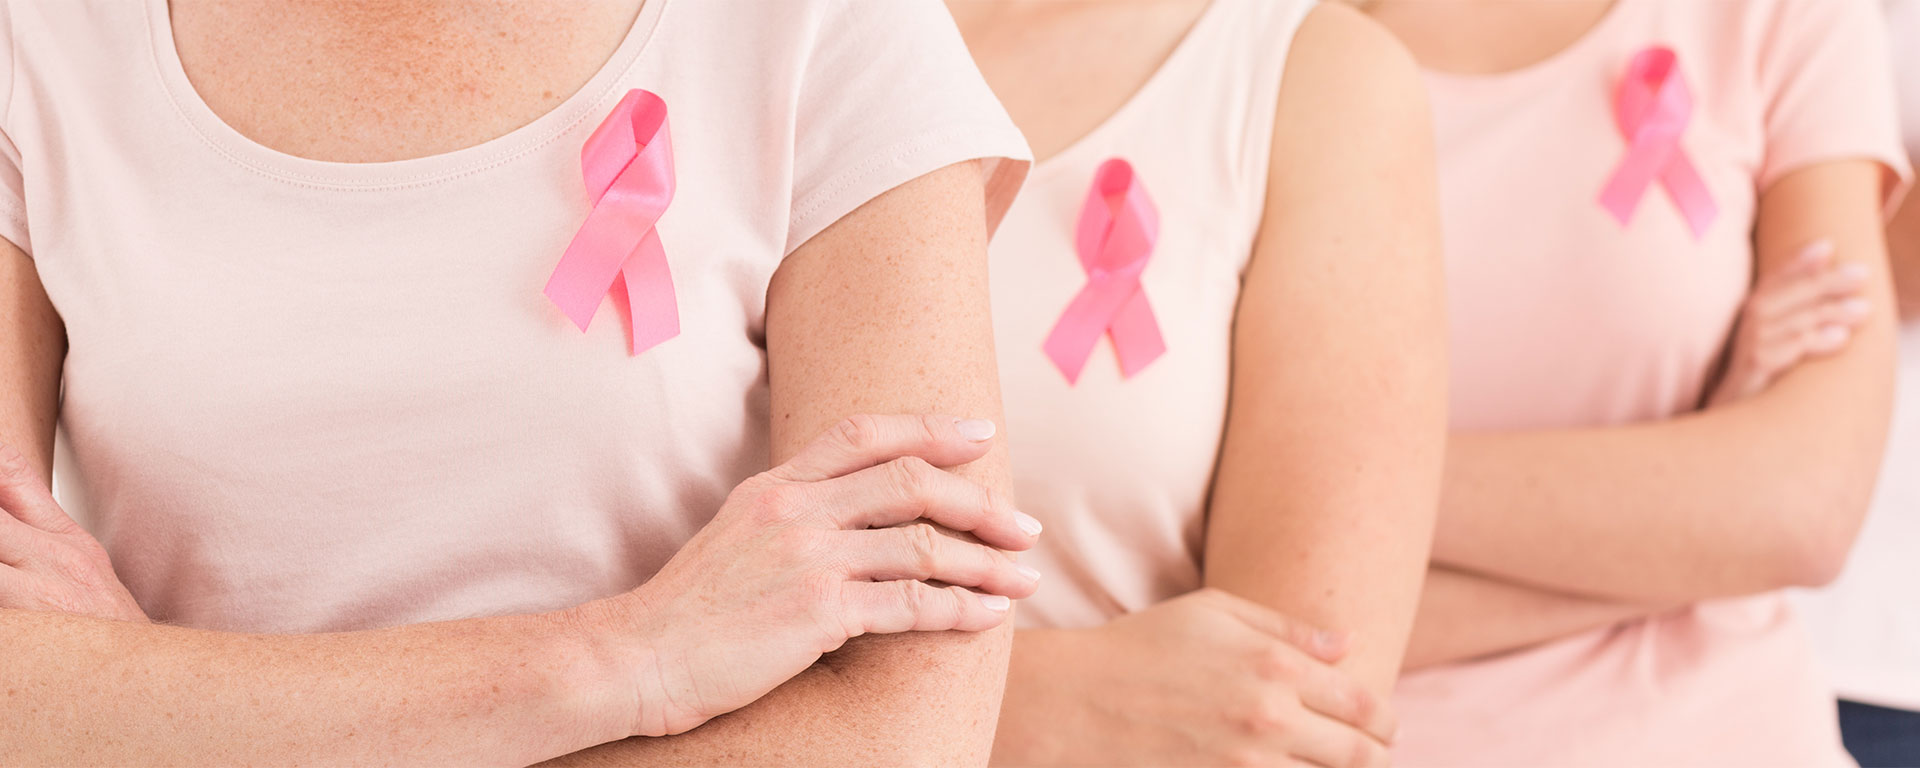 Zwei Frauen die eine rosa Schleife am T-Shirt tragen. Diese ist ein Symbol im Bewusstsein gegen Brustkrebs.